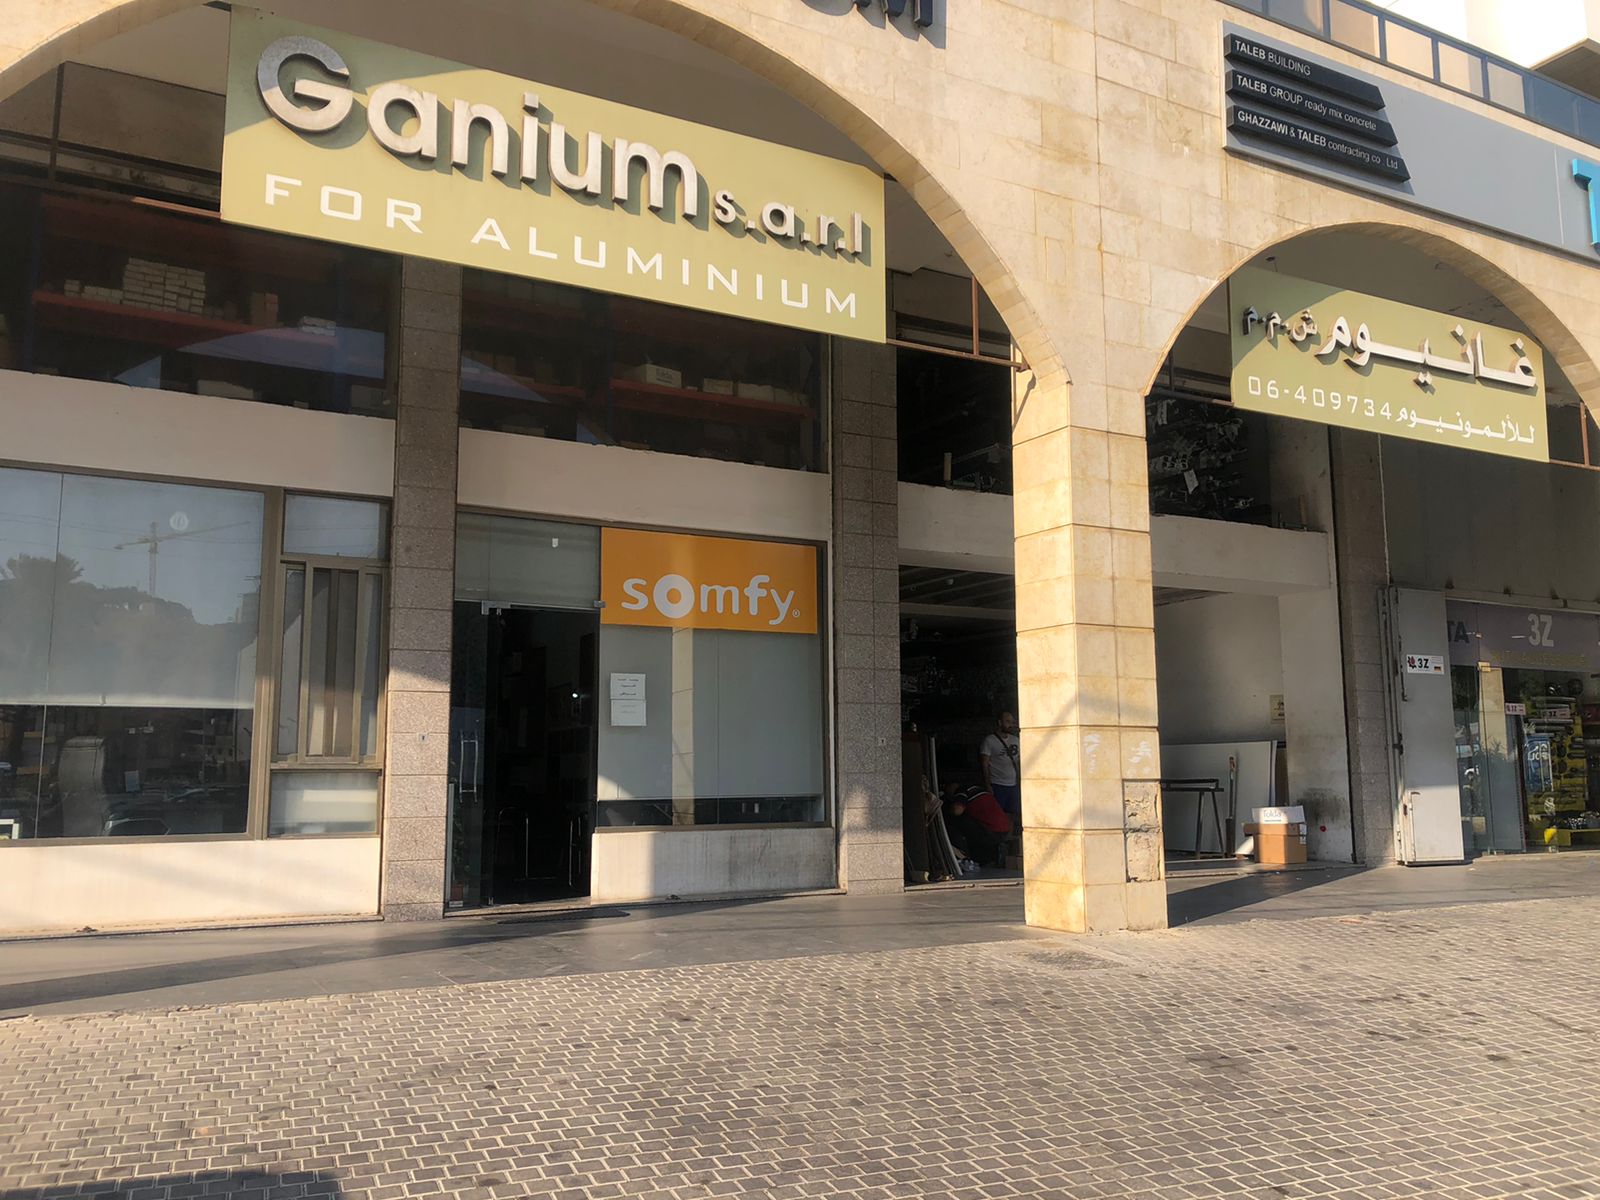 Front of Ganium Aluminium store